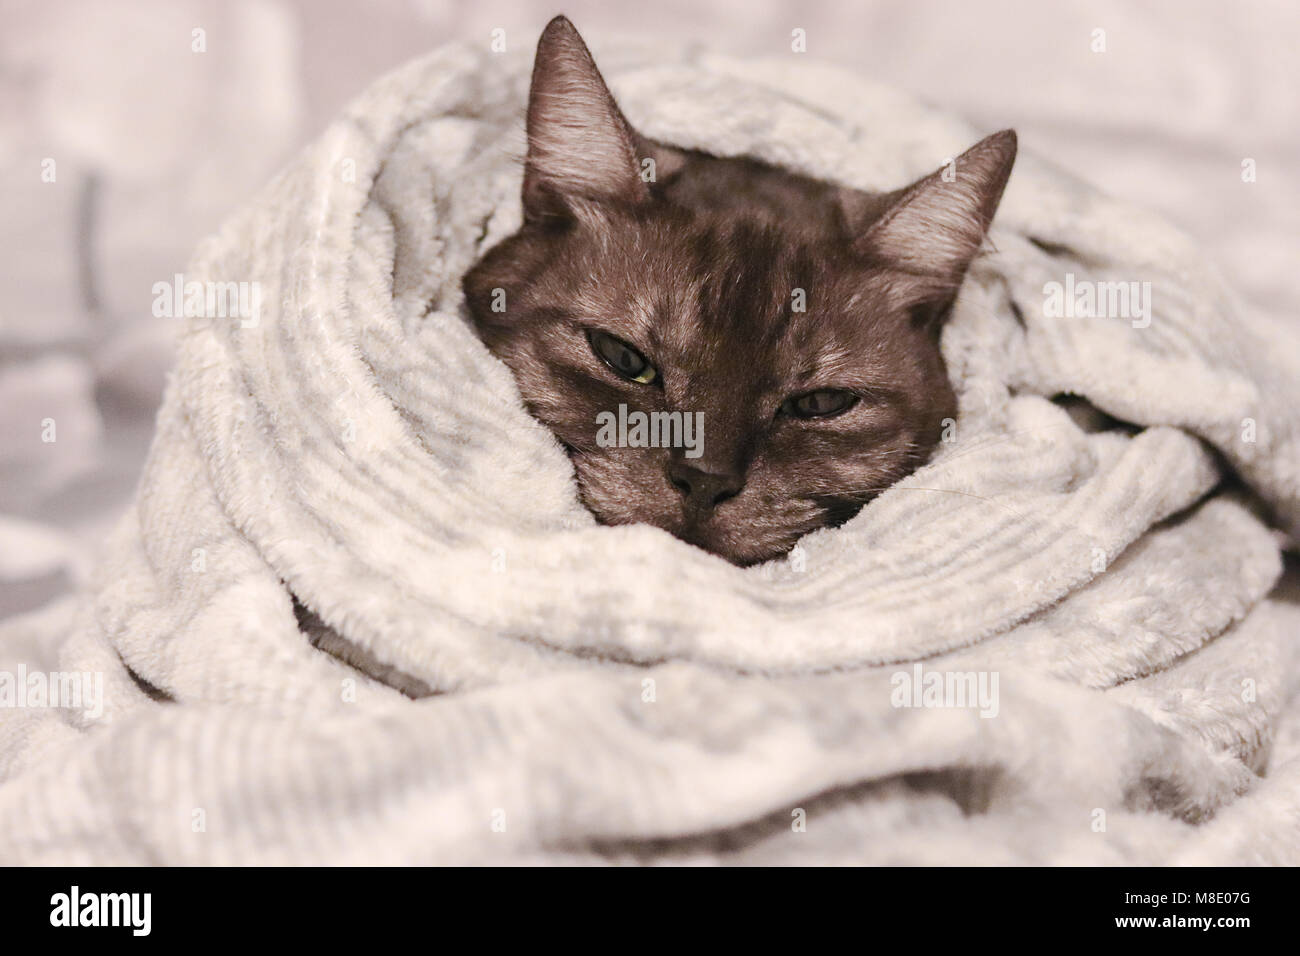 In fase di riscaldamento a freddo in giorni. Grigio strippato cute cat avvolti in un morbido la calda coperta. Foto Stock